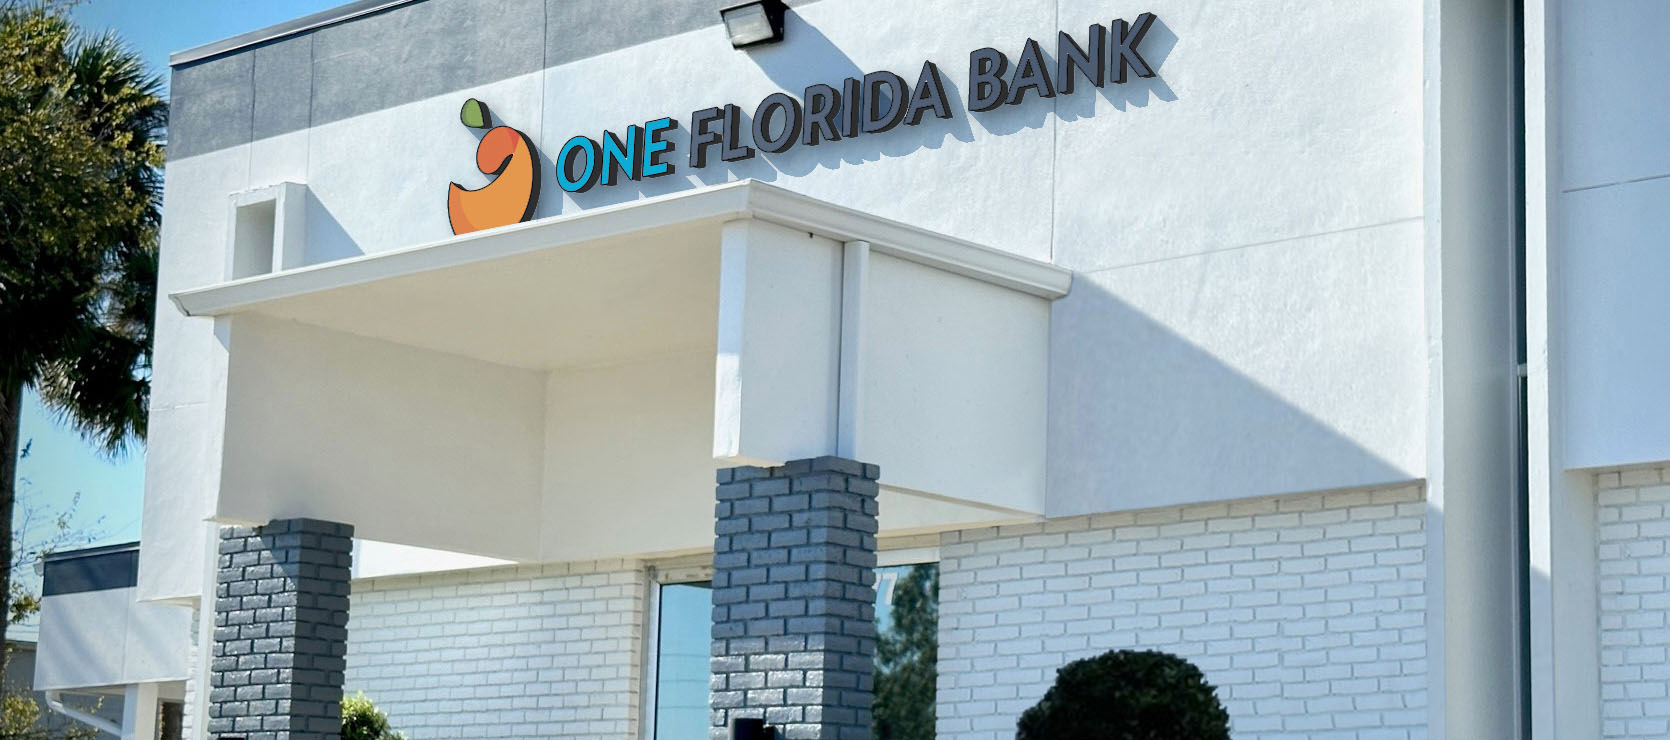 Home › One Florida Bank